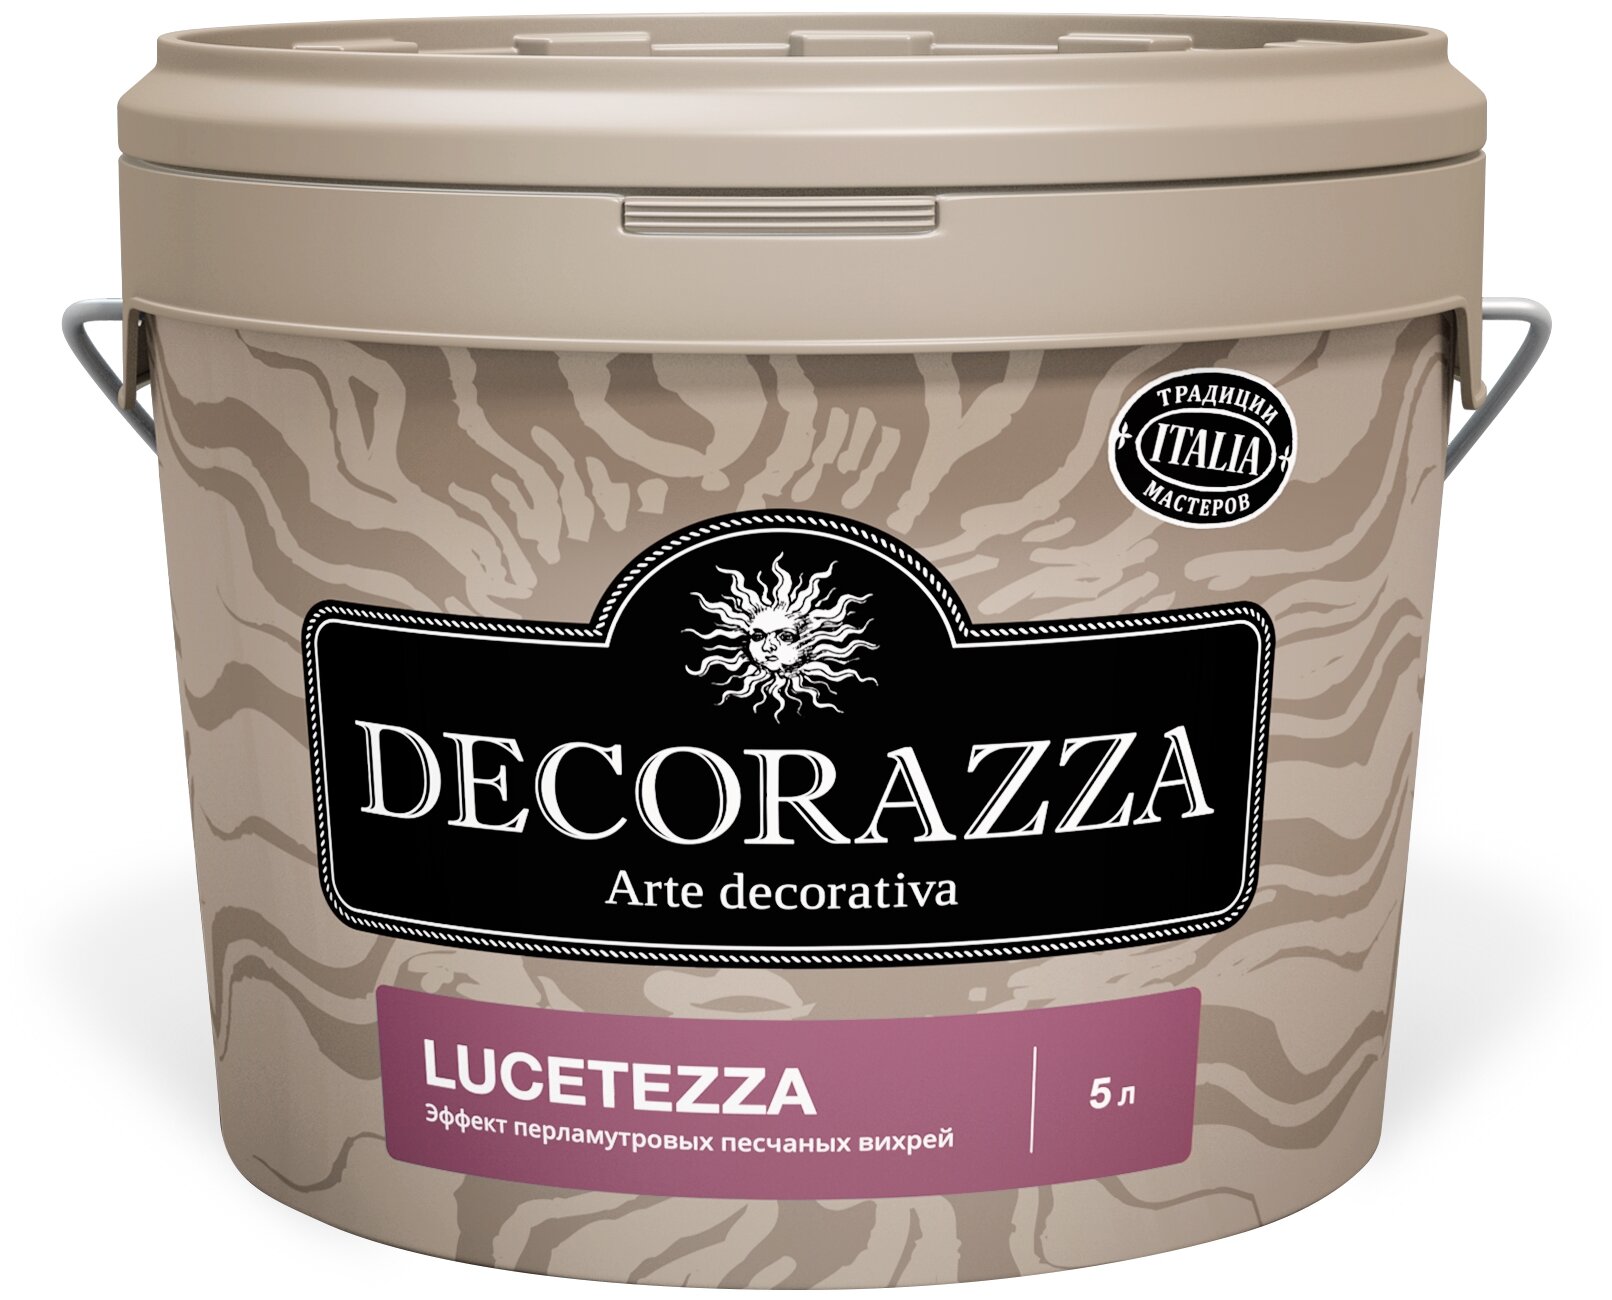 Декоративная краска с эффектом перламутровых песчаных вихрей Decorazza Lucetezza Nova (5л) LCN 001